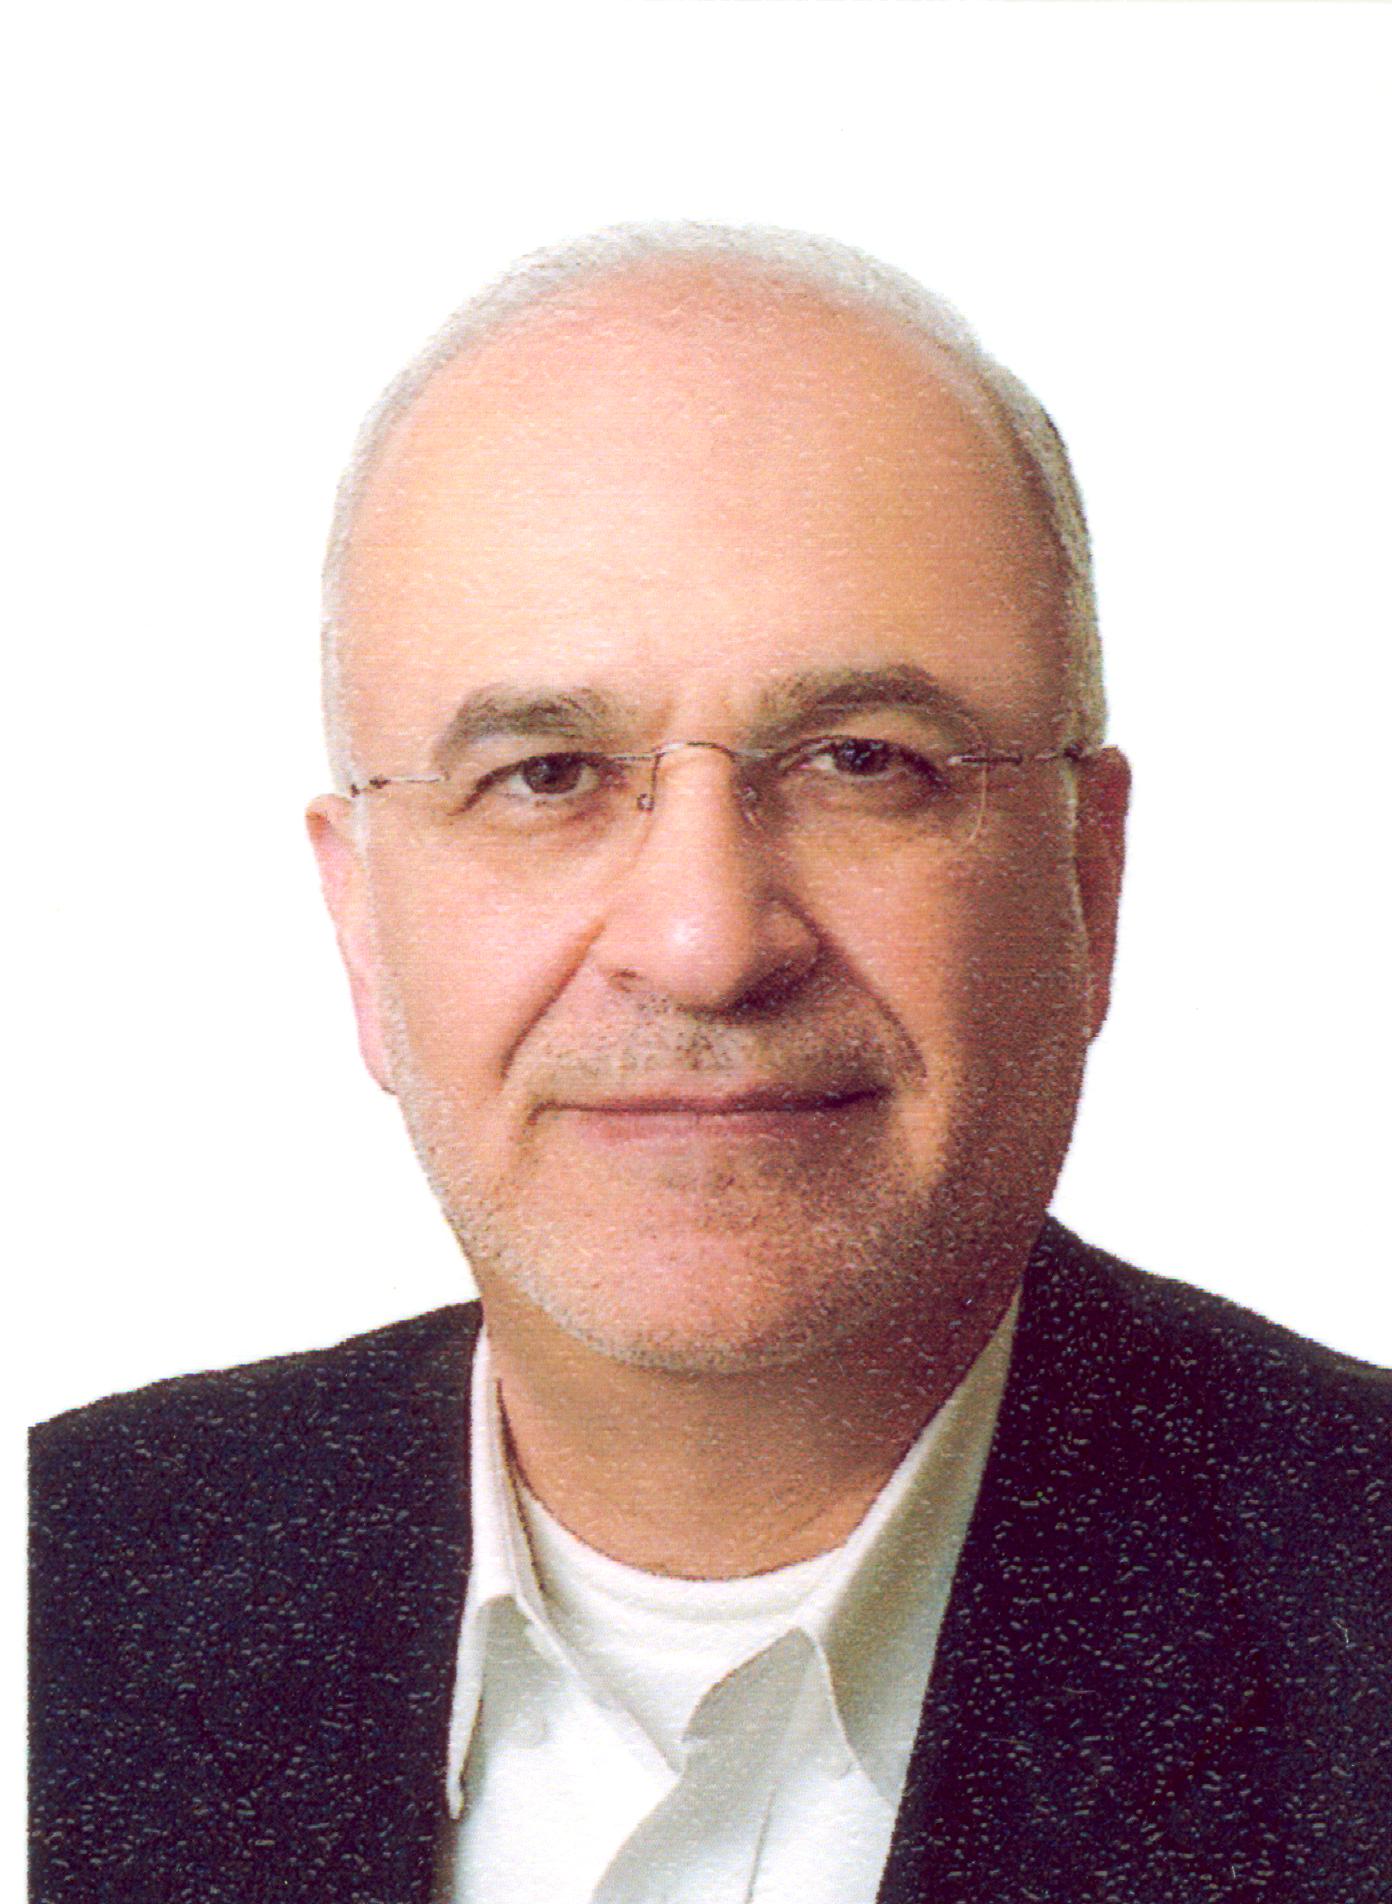 Ahmad Reza Sharafat